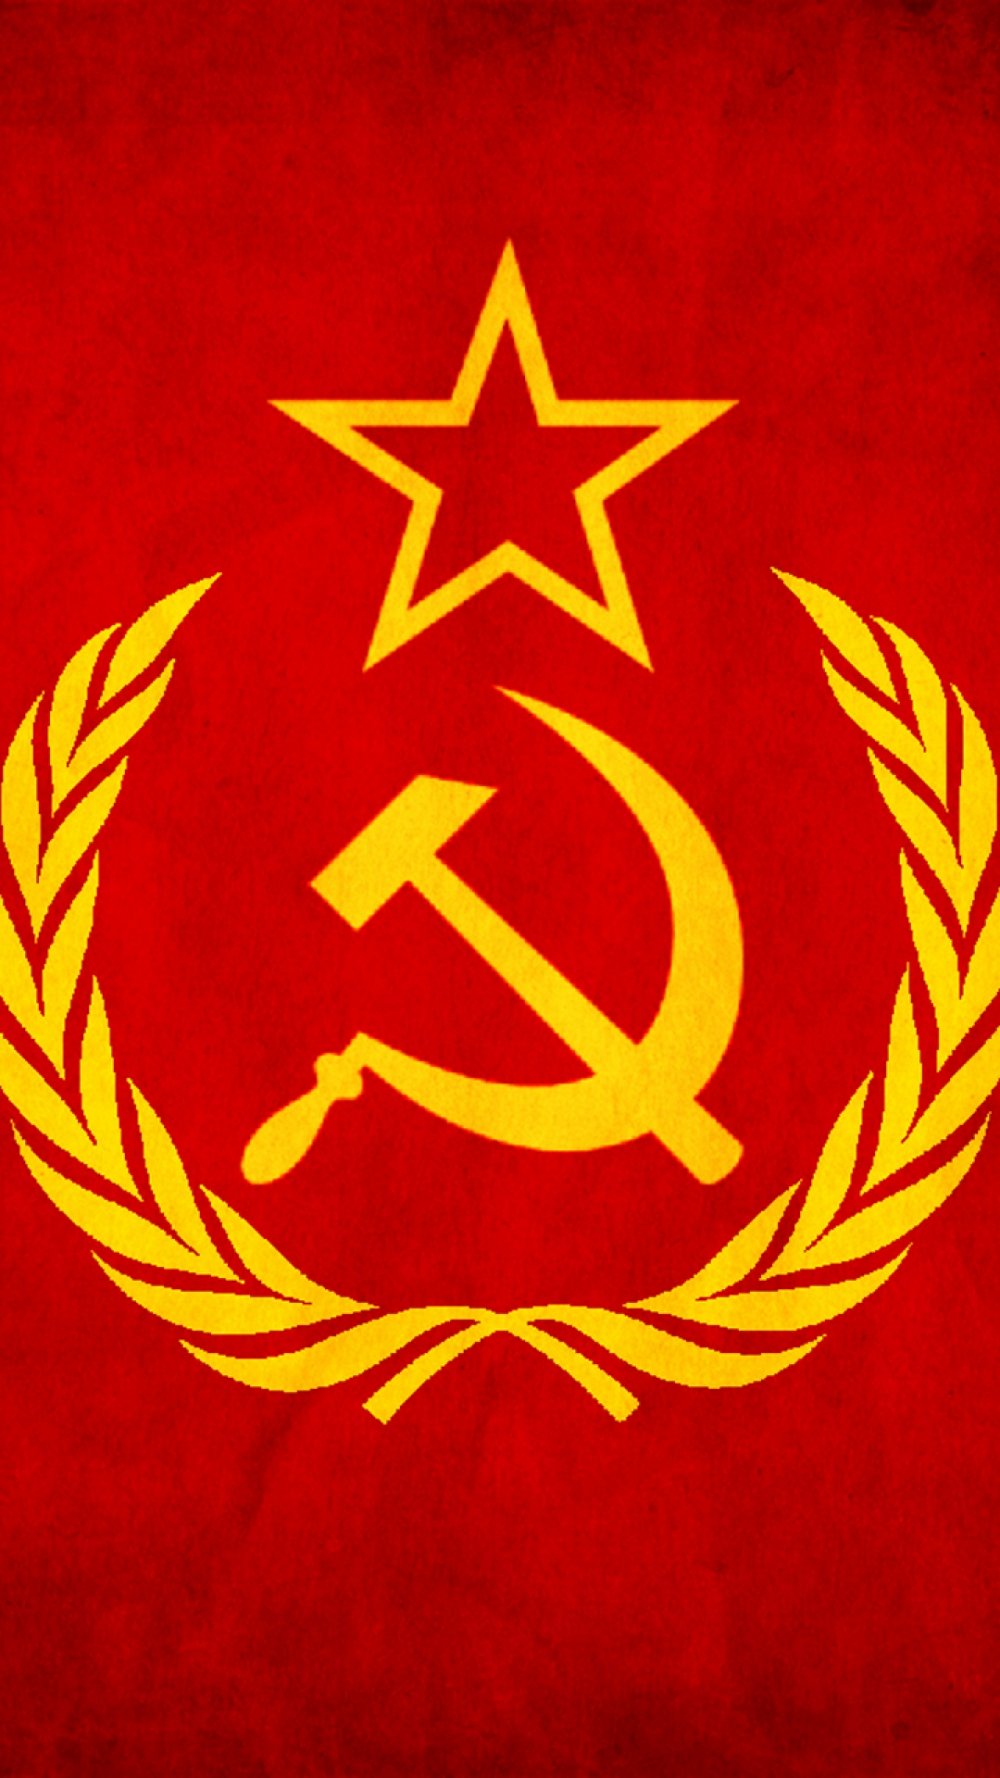 Герб СССР 1924 года